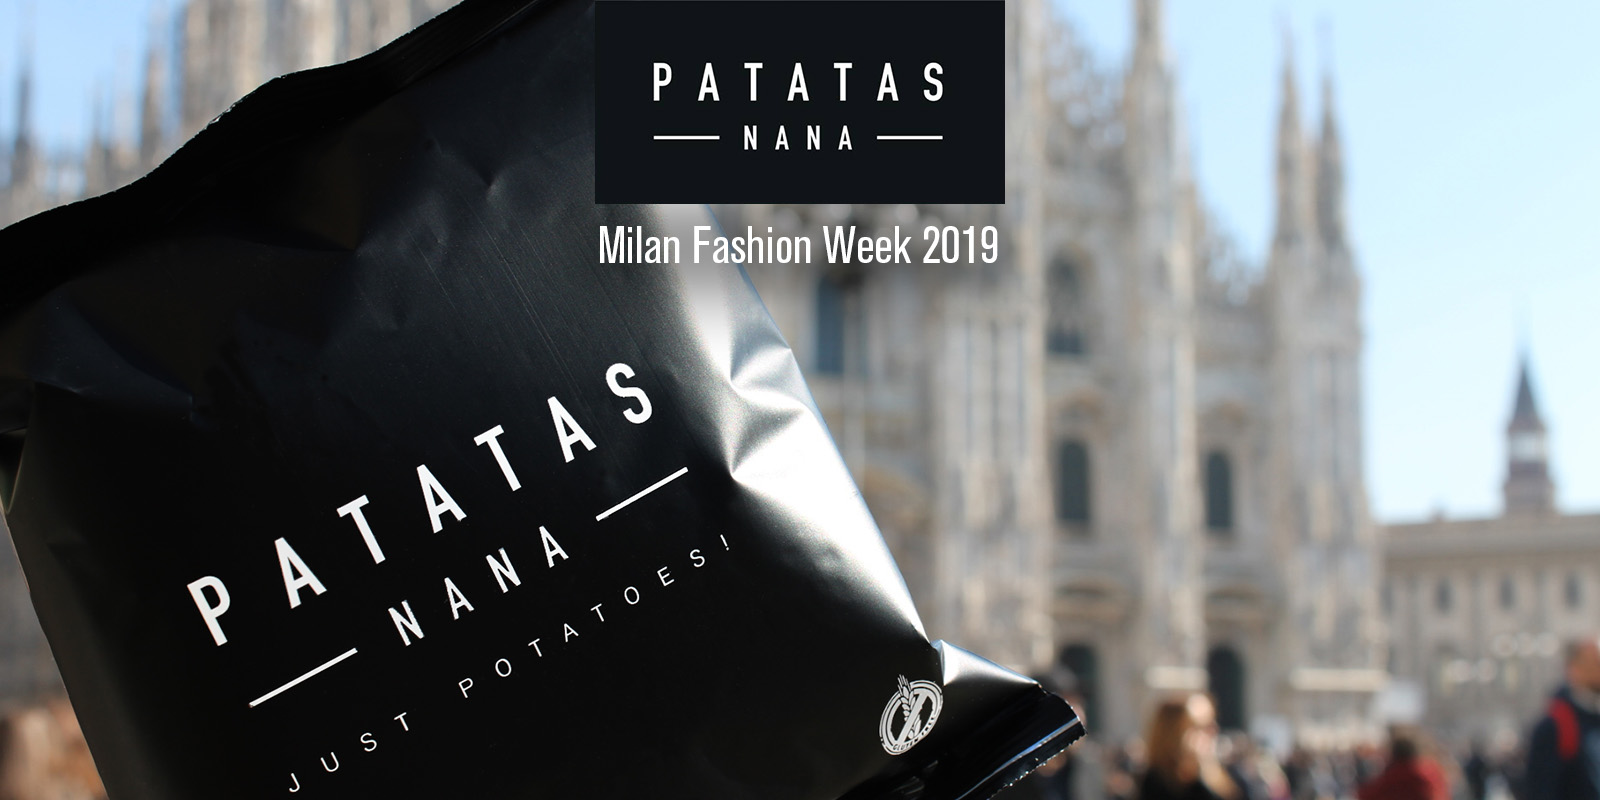 Patatas Nana partner ufficiale all’evento Fashion in the city durante la Fashion Week 2019